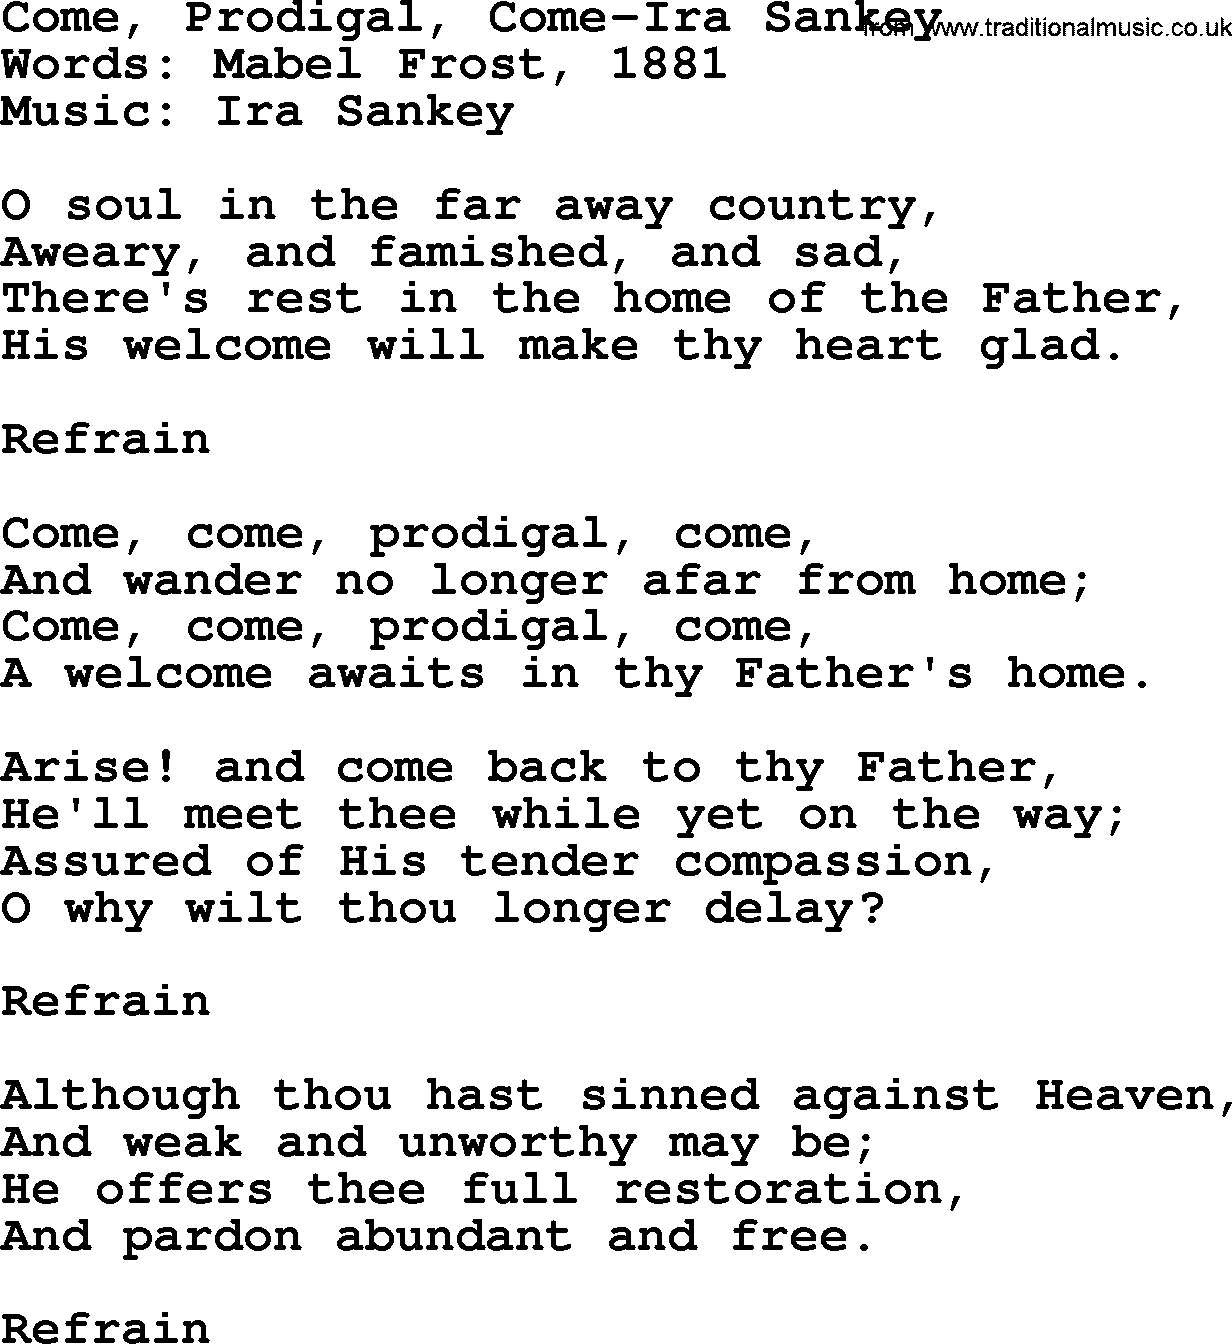 Ira Sankey hymn: Come, Prodigal, Come-Ira Sankey, lyrics